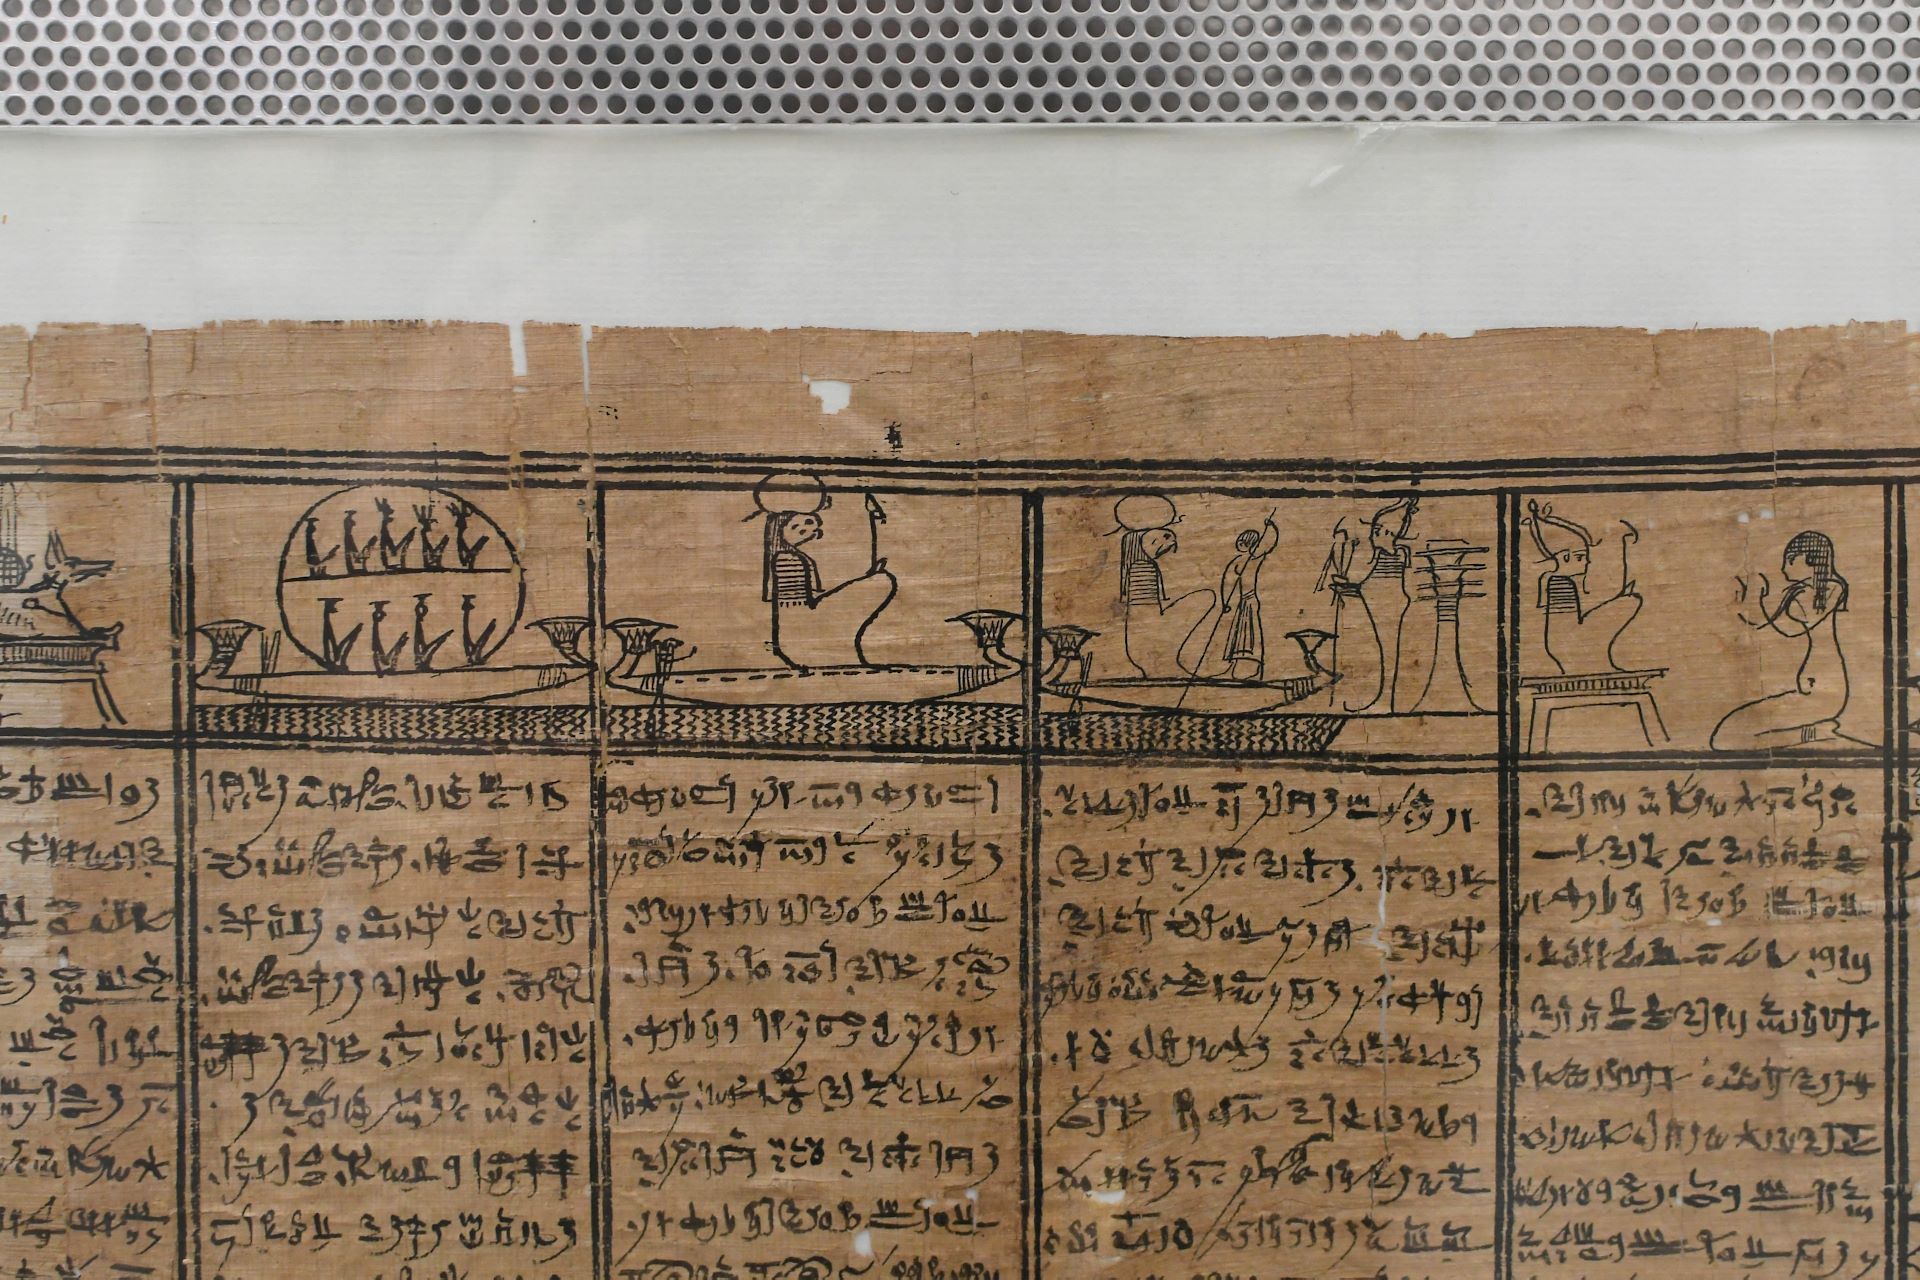 blog:2018-11-17-texte-aus-ferner-zeit:2018-11-17-wien-papyrusmuseum-070b.jpg